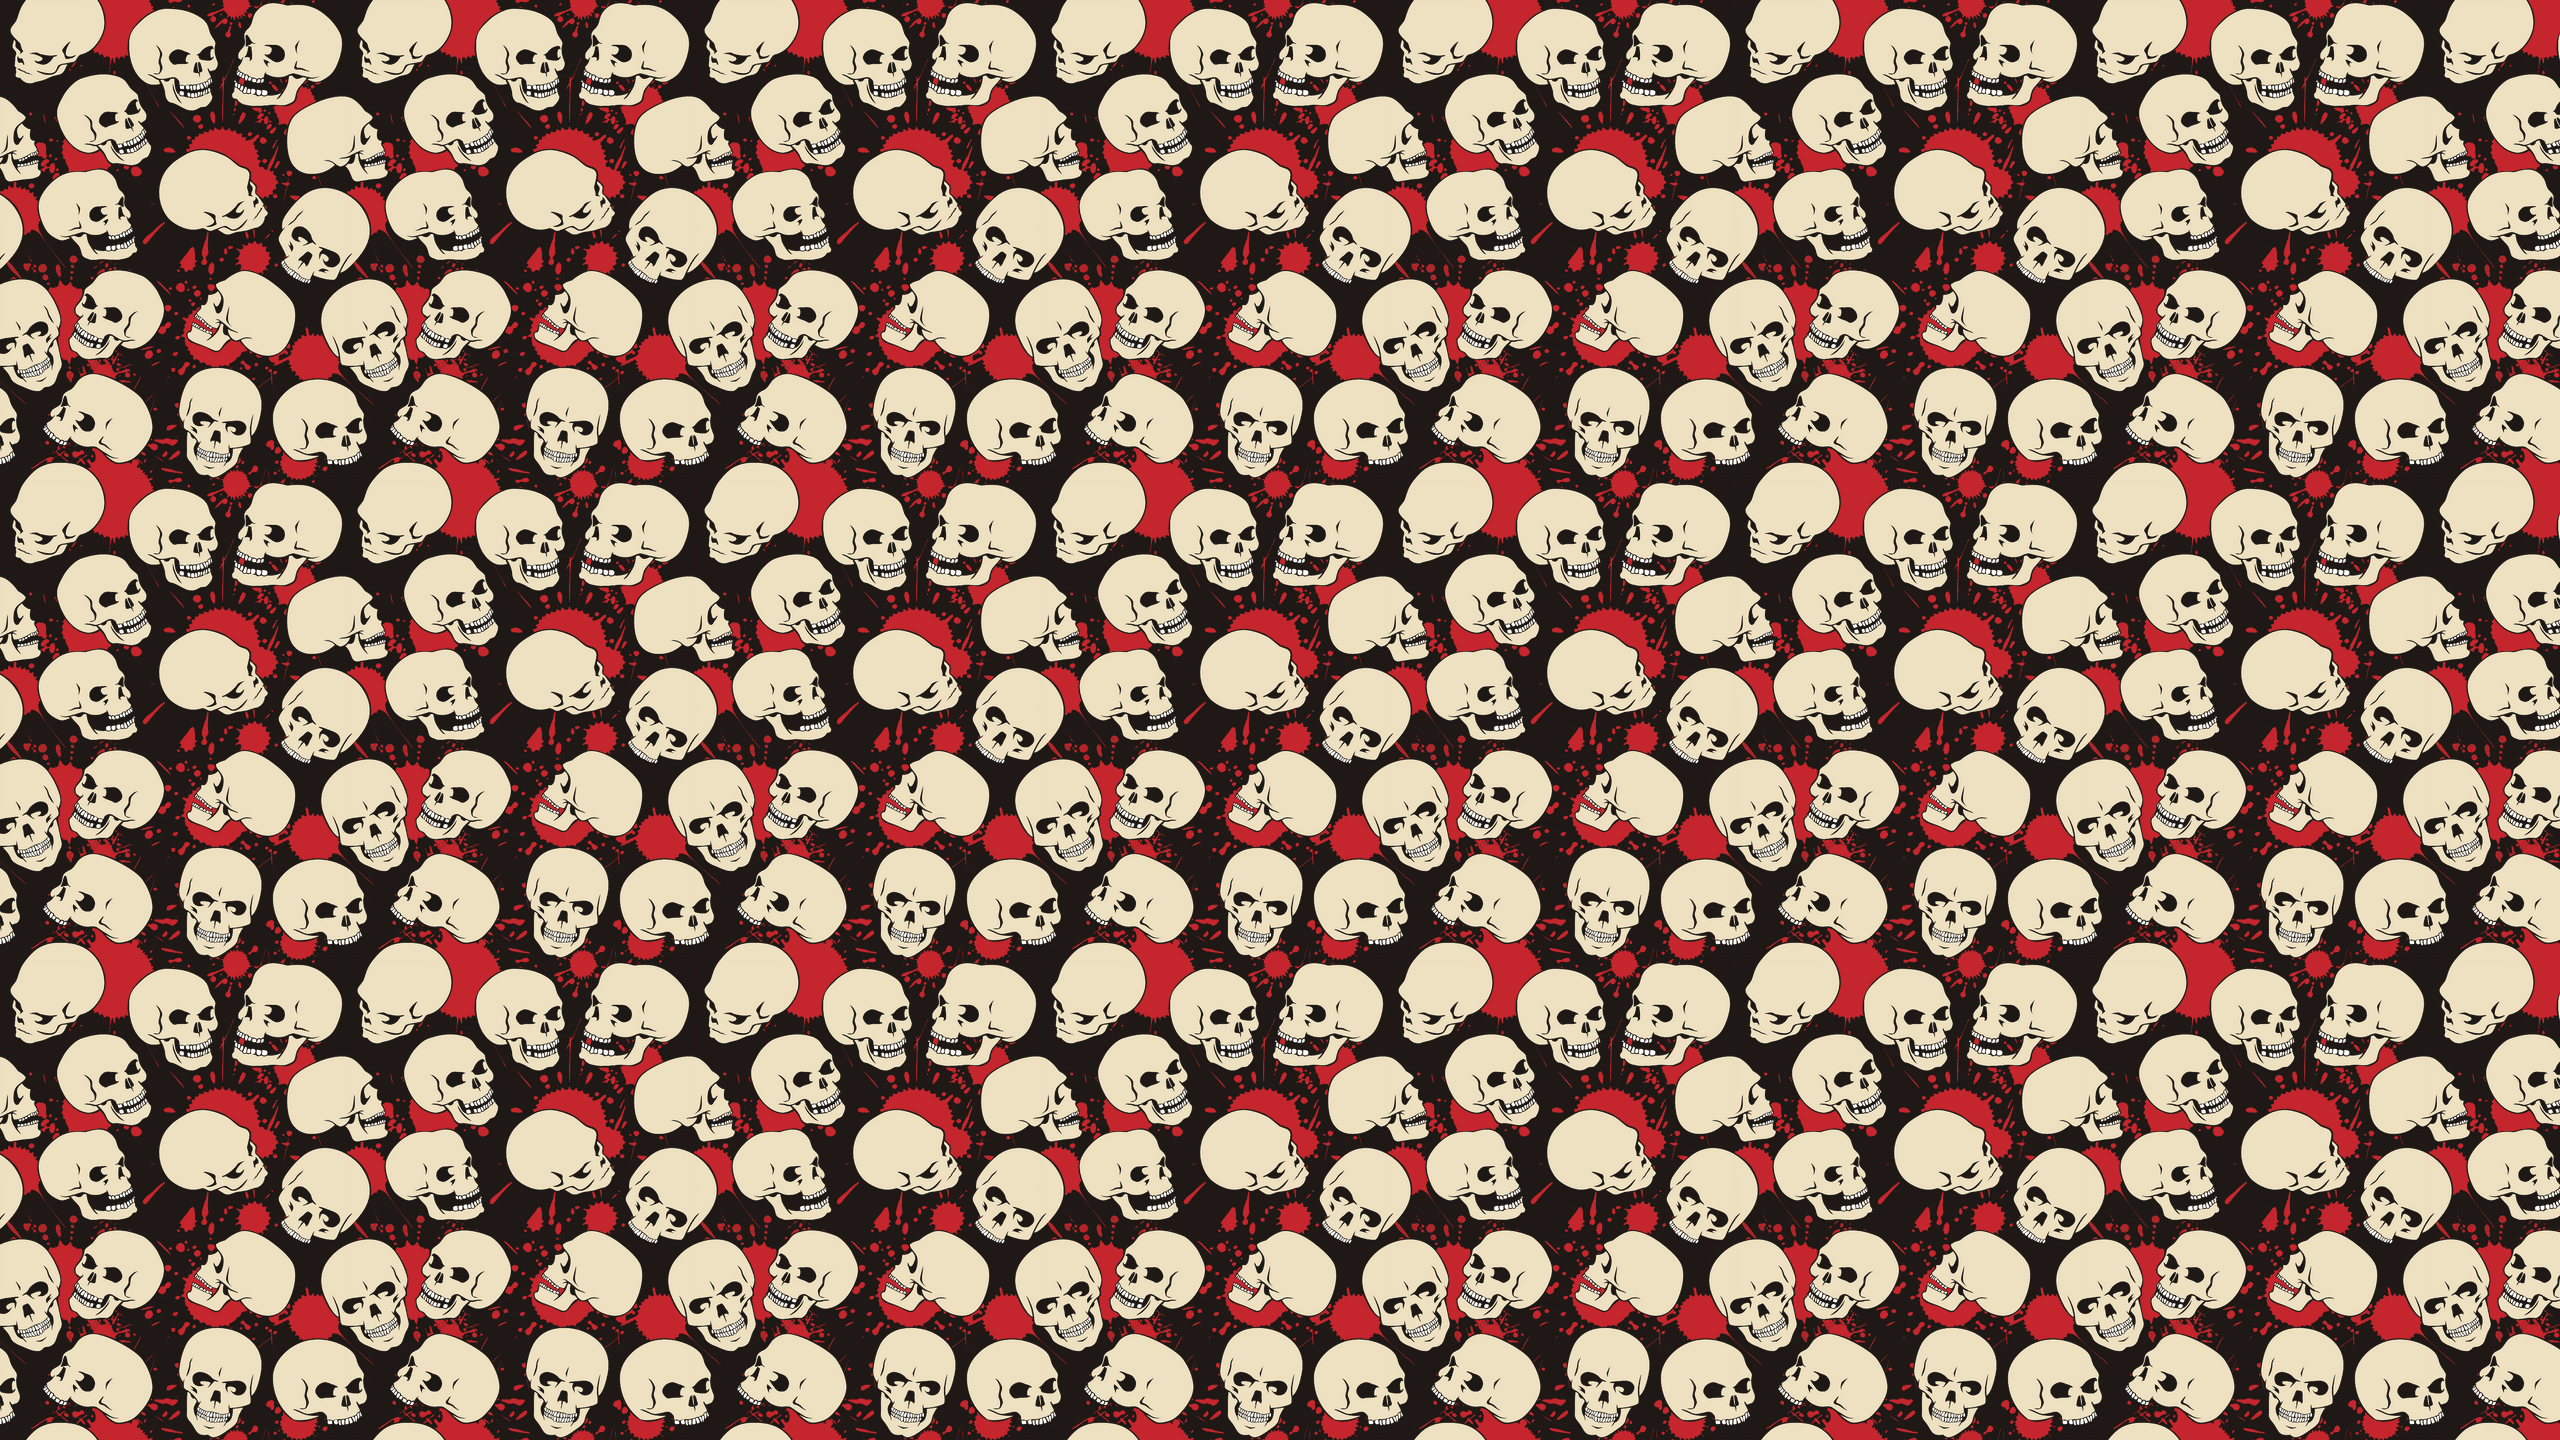 skull tumblr background